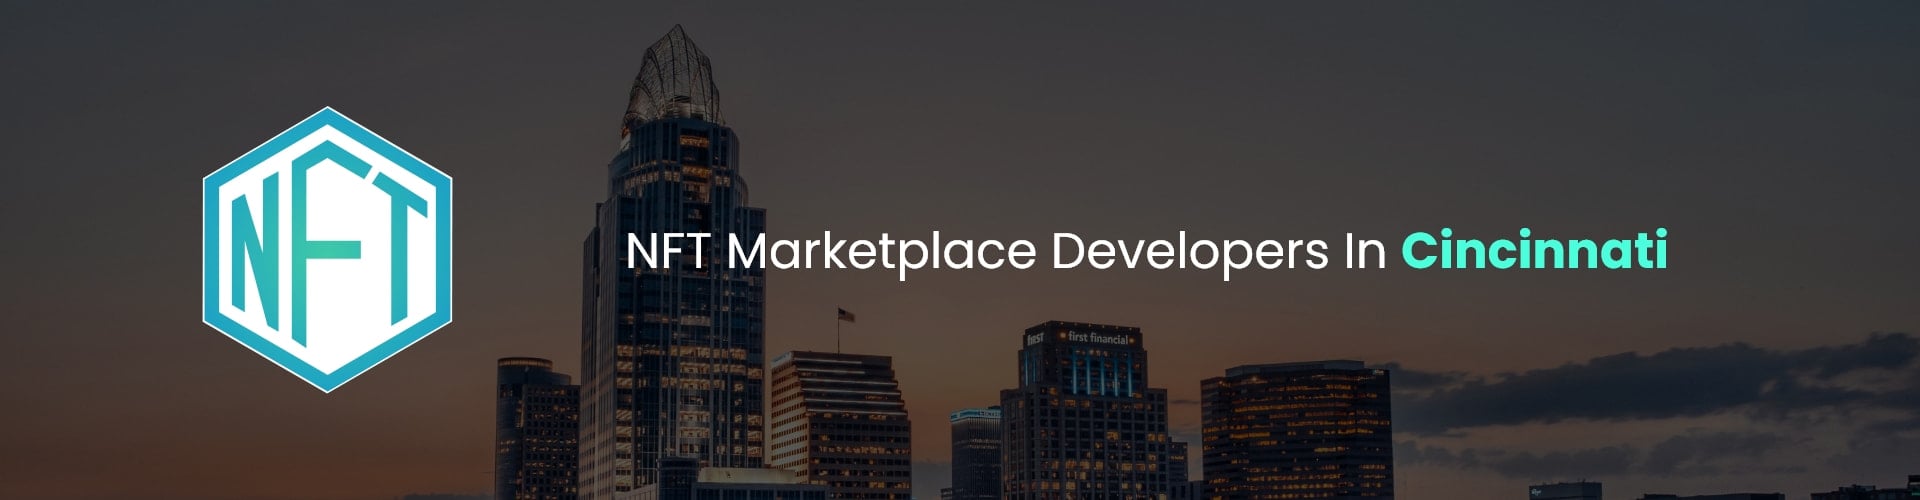 hire nft marketplace developers in cincinnati